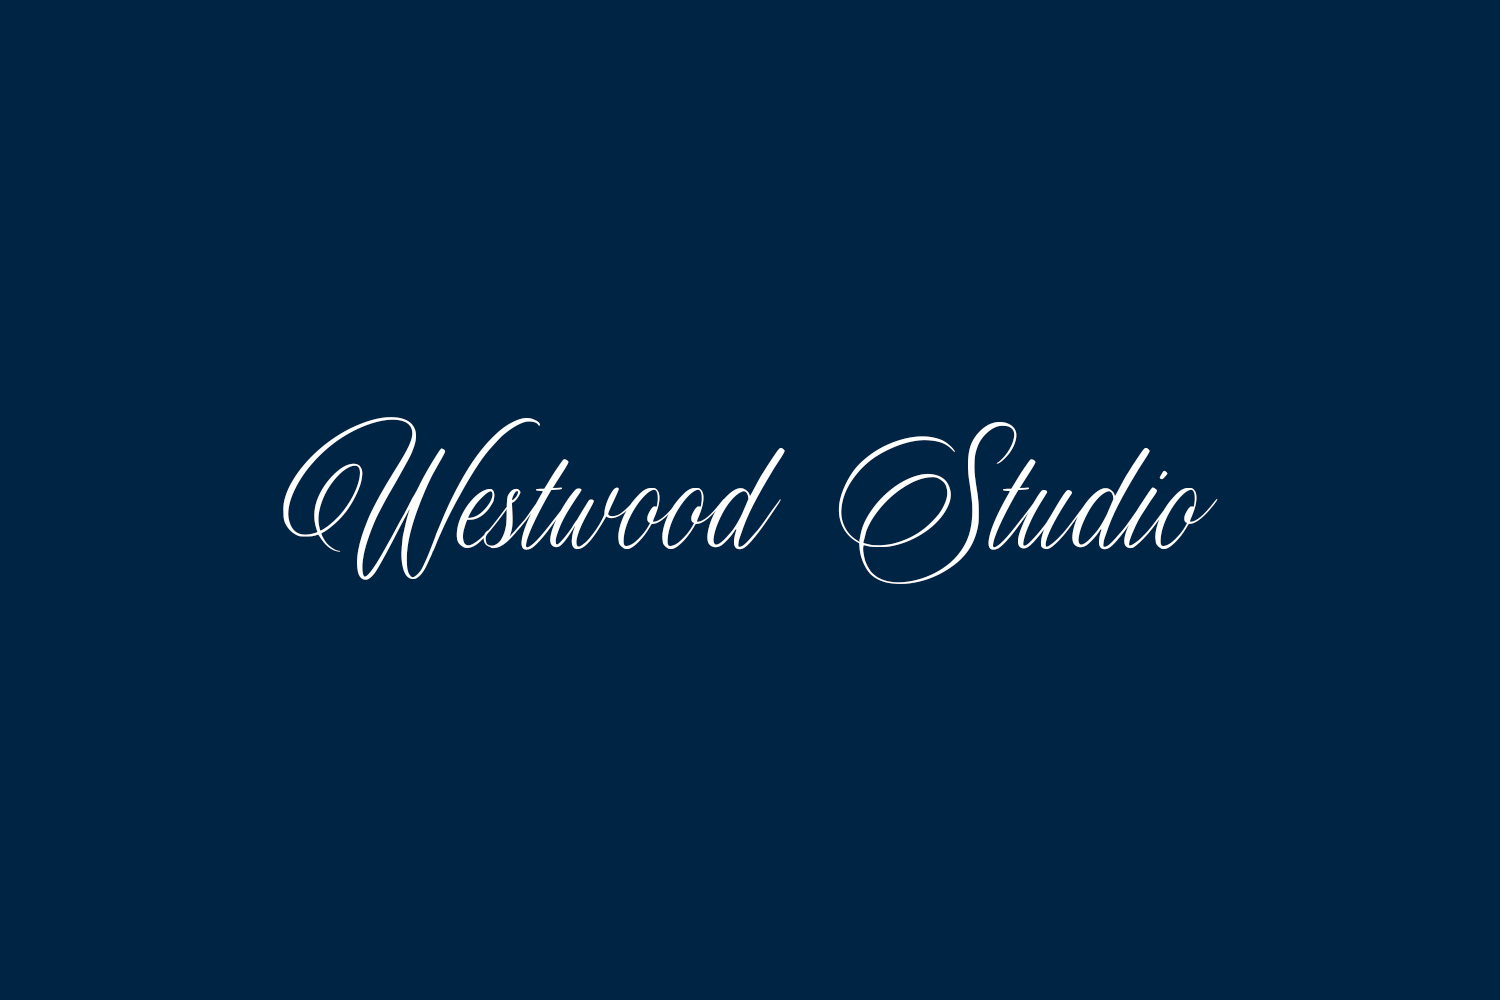 Westwood Studio Free Font